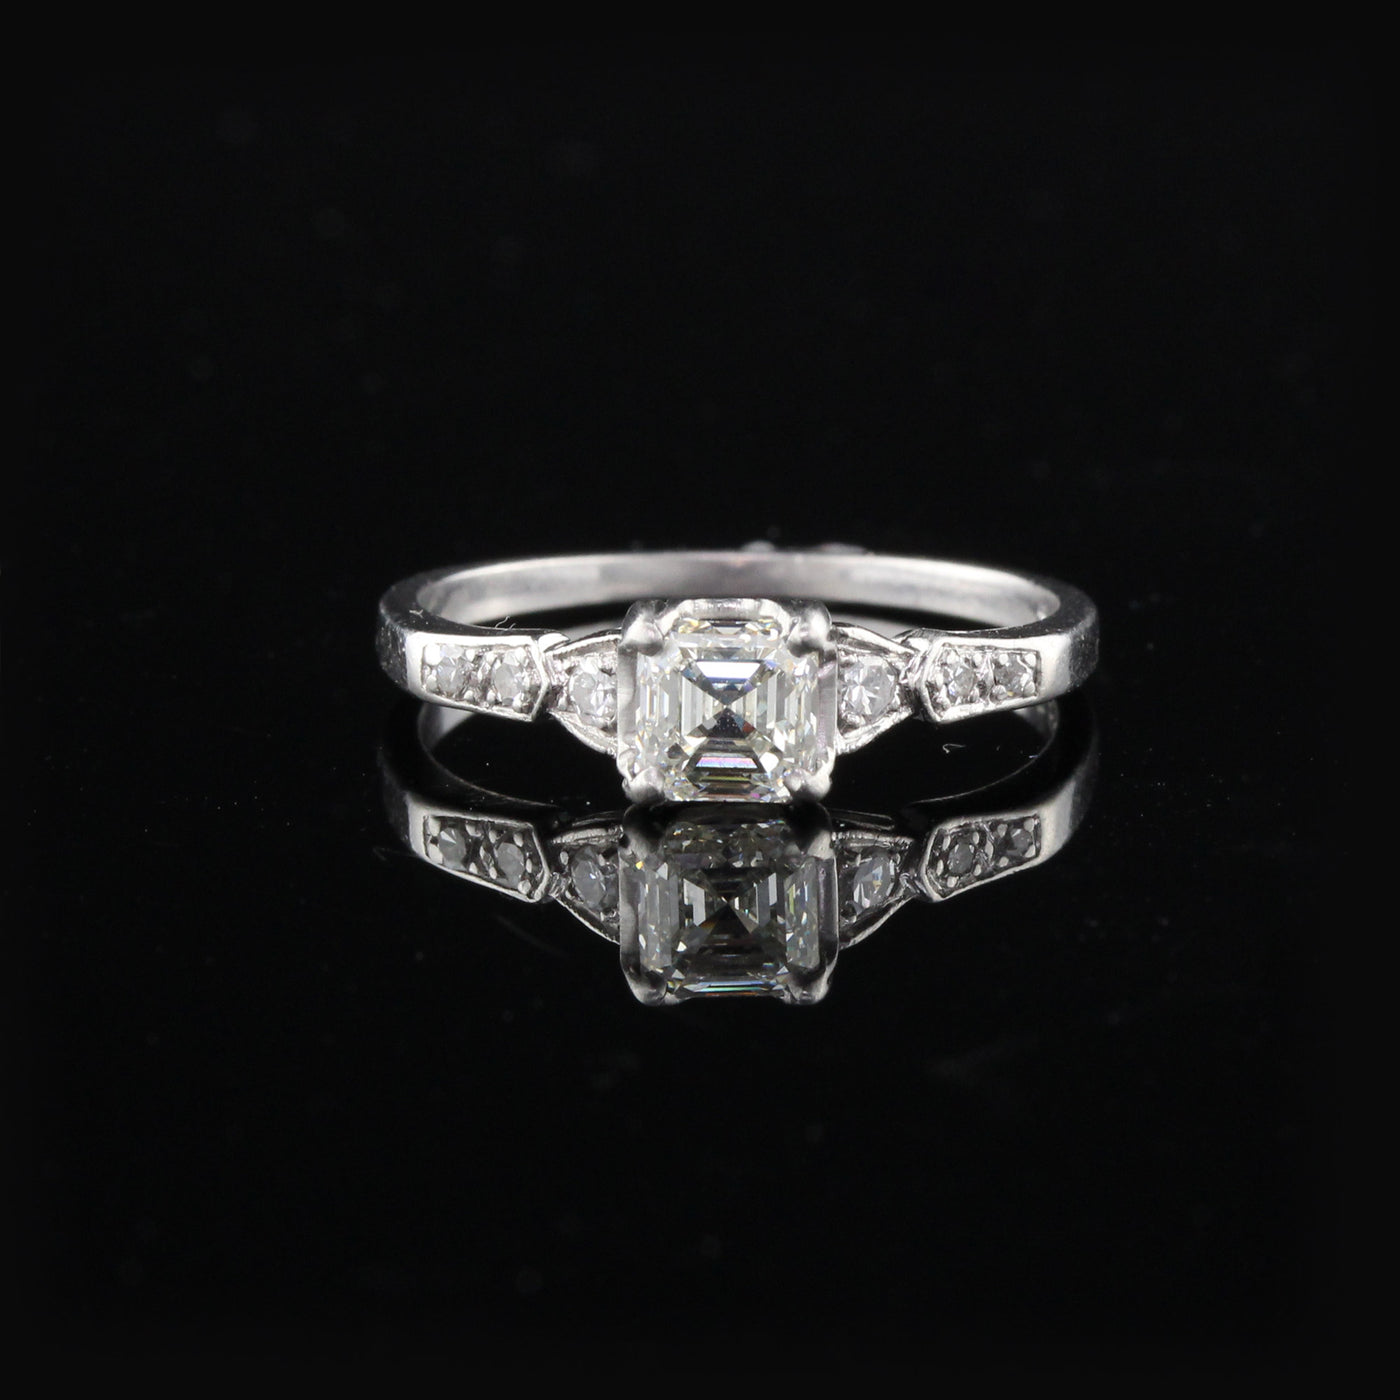 Antique Art Deco Platinum Asscher Cut Diamond Engagement Ring - The Antique Parlour